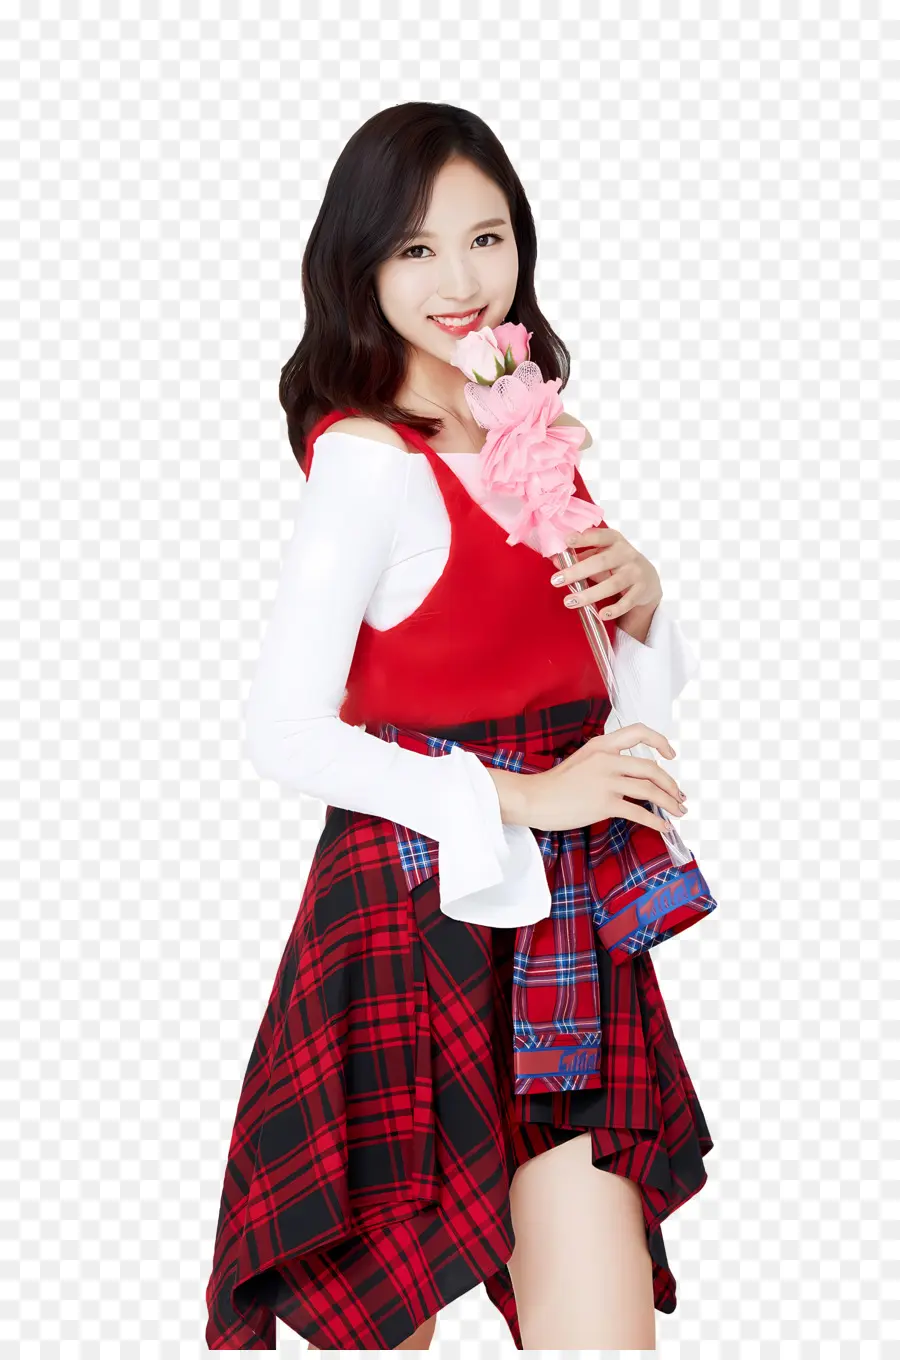 zweimal südkoreanische Mädchen junge Frau karierte Kleidblume Blume - Junge Frau in kariertem Kleid hält Blume